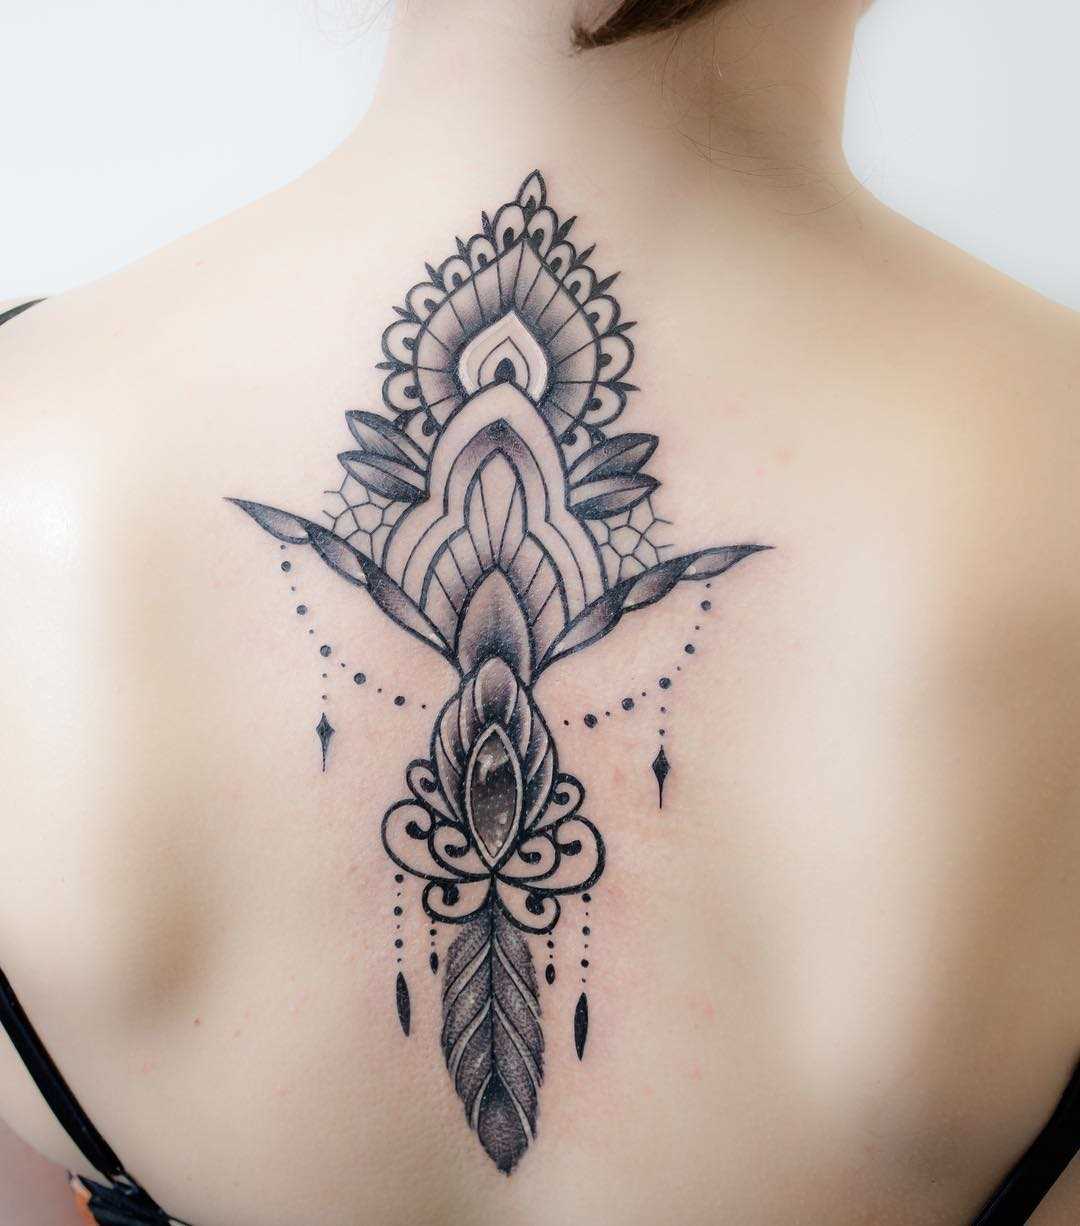 Foto de uma tatuagem em estilo barroco na coluna da menina